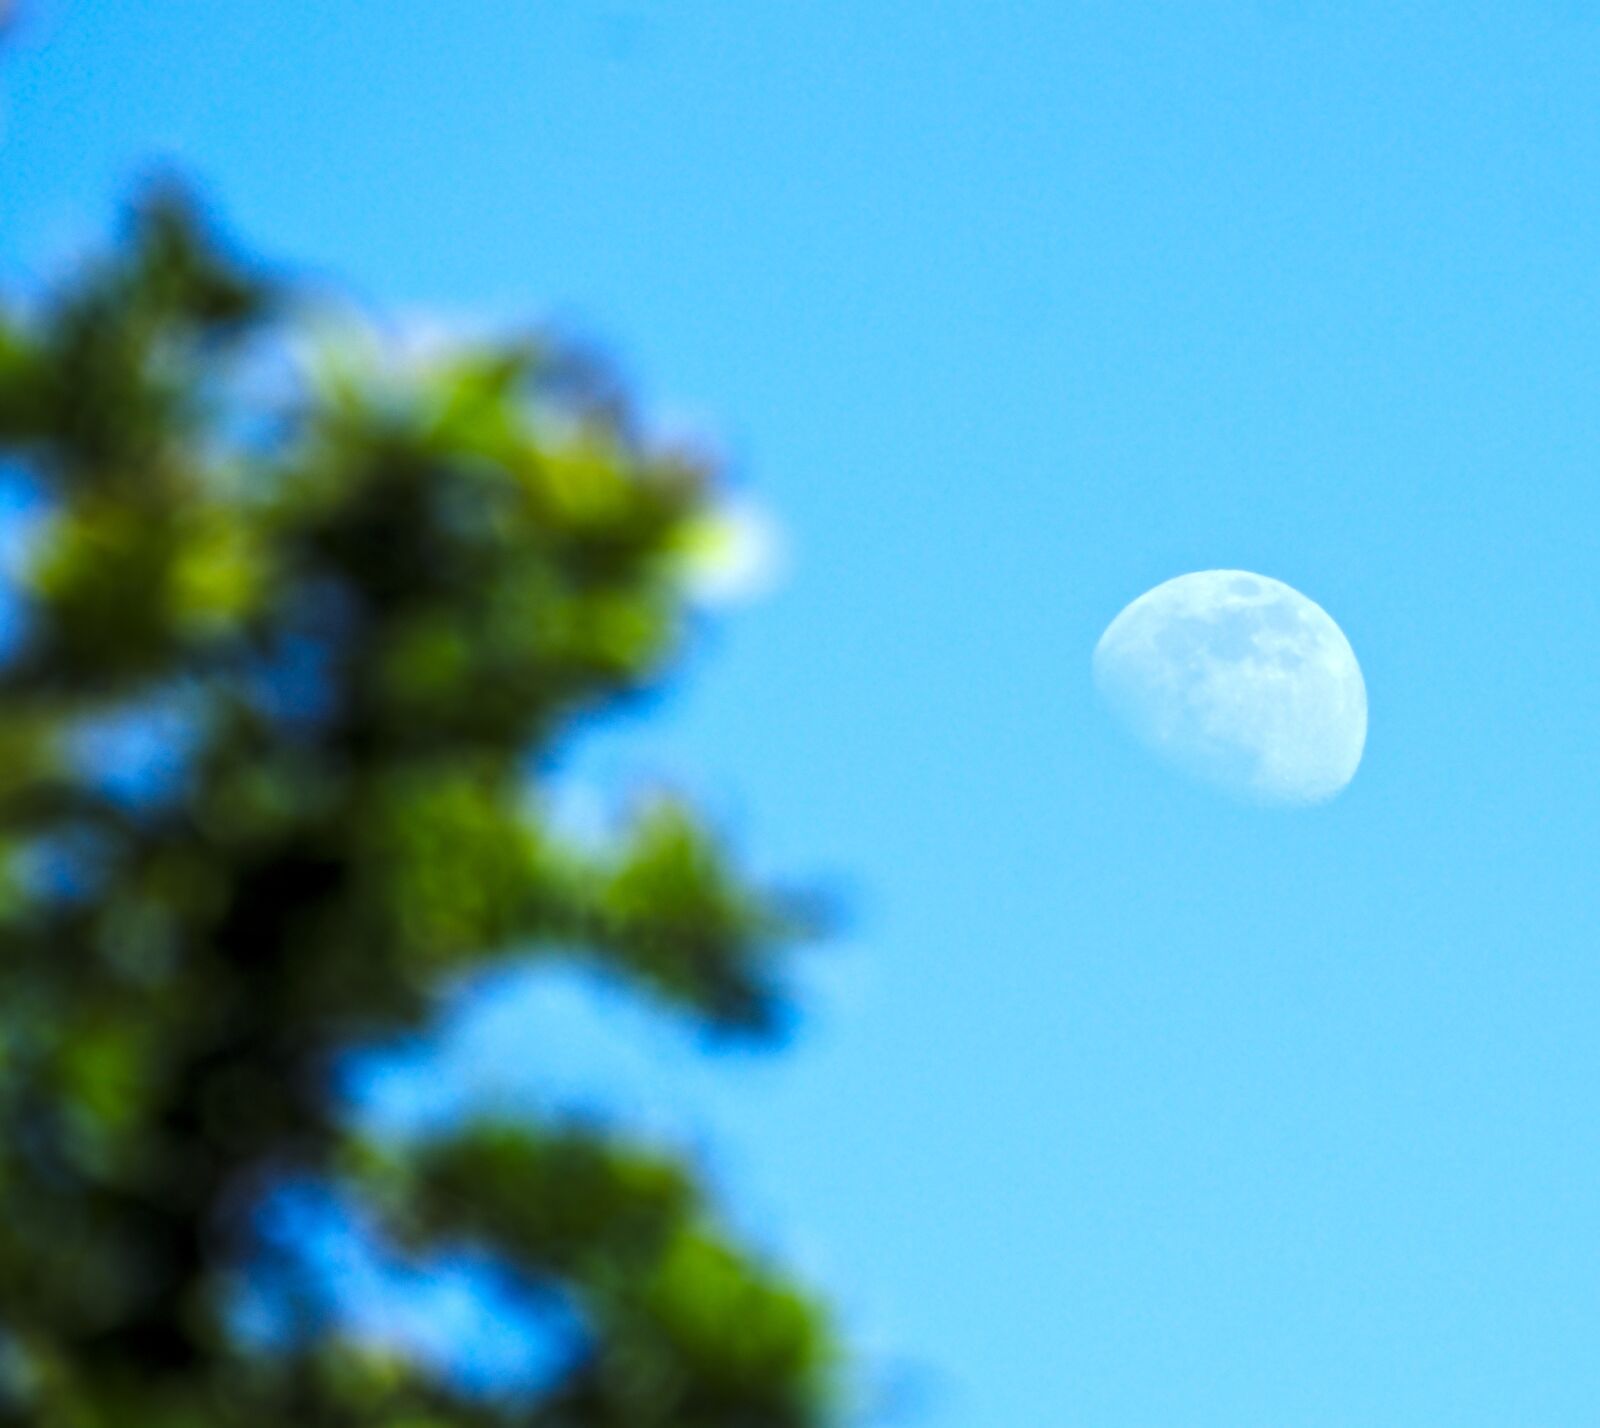 Sony FE 70-300mm F4.5-5.6 G OSS sample photo. Moon, tree, blue sky photography